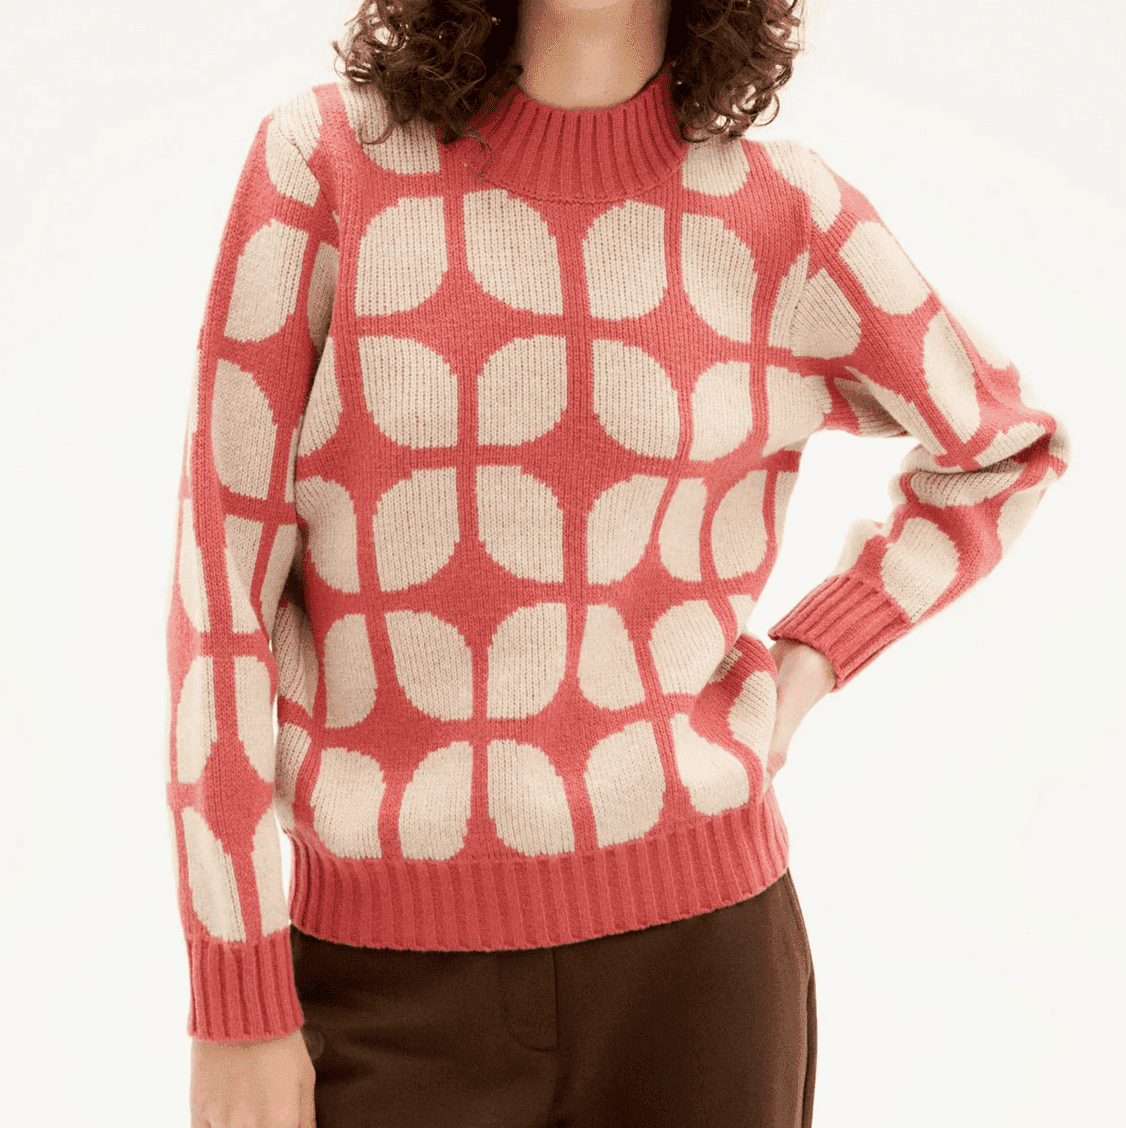 Wallpaper wool sweater